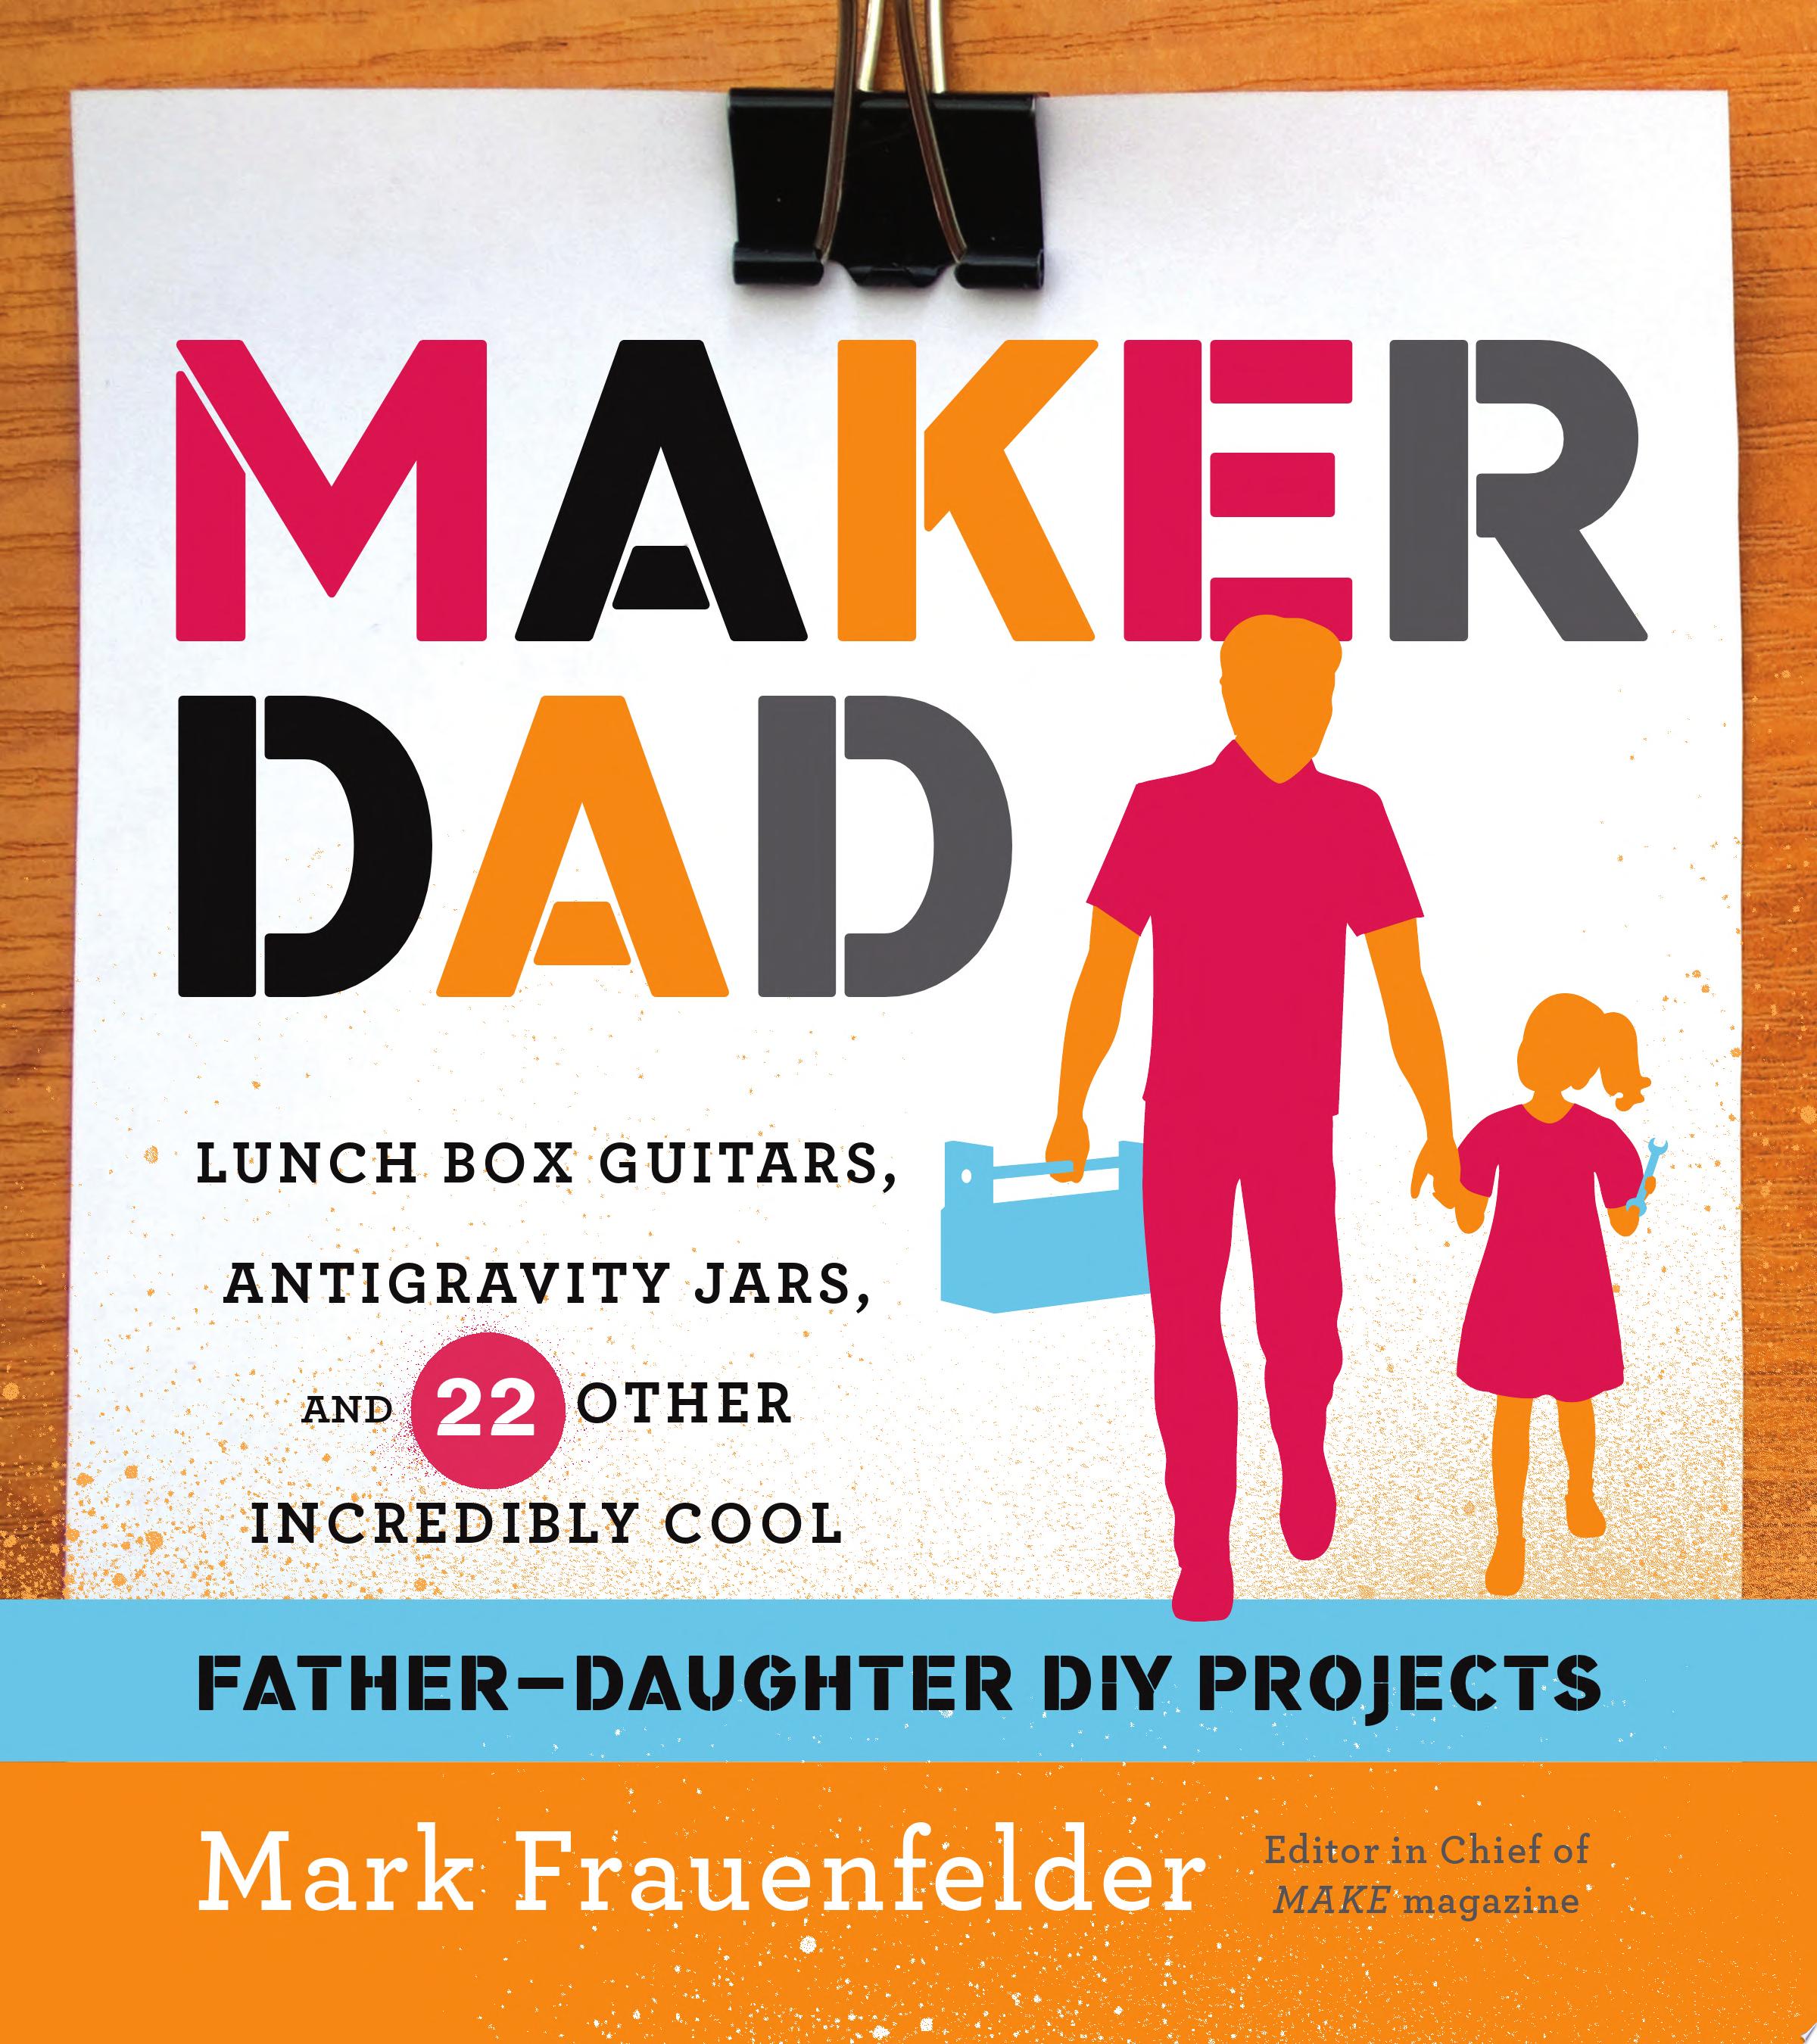 Image for "Maker Dad"